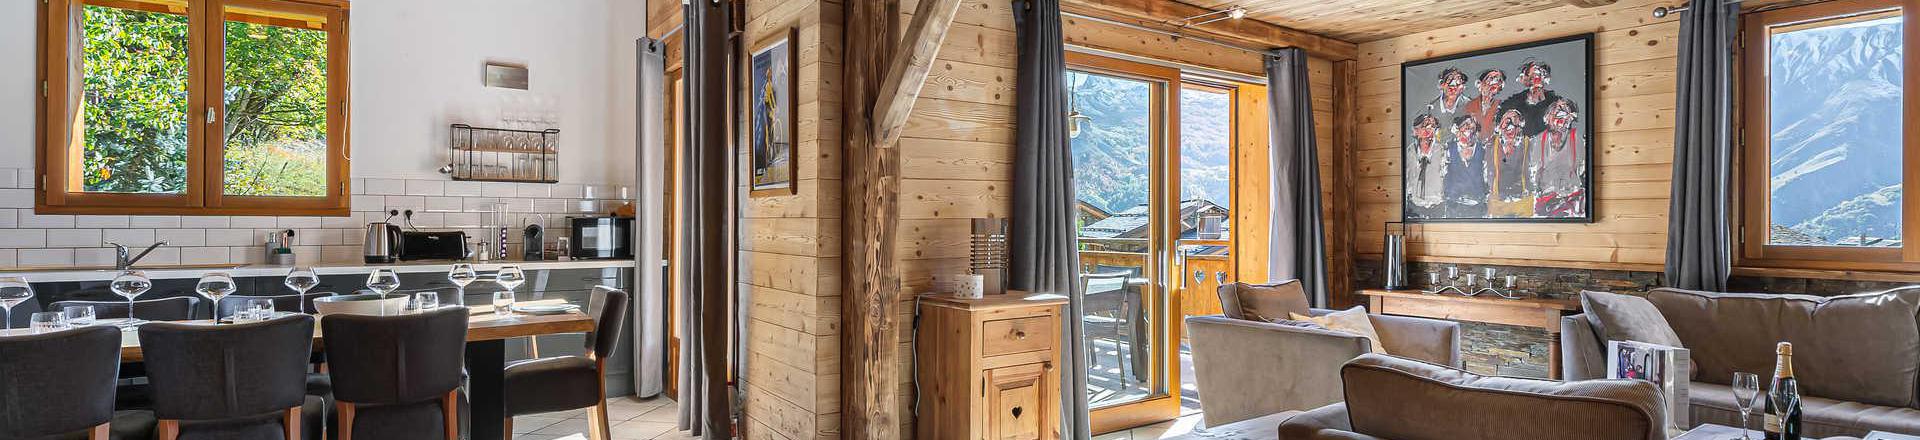 Rent in ski resort 6 room triplex chalet 10 people - Chalet Roc de la Lune - Saint Martin de Belleville - Table